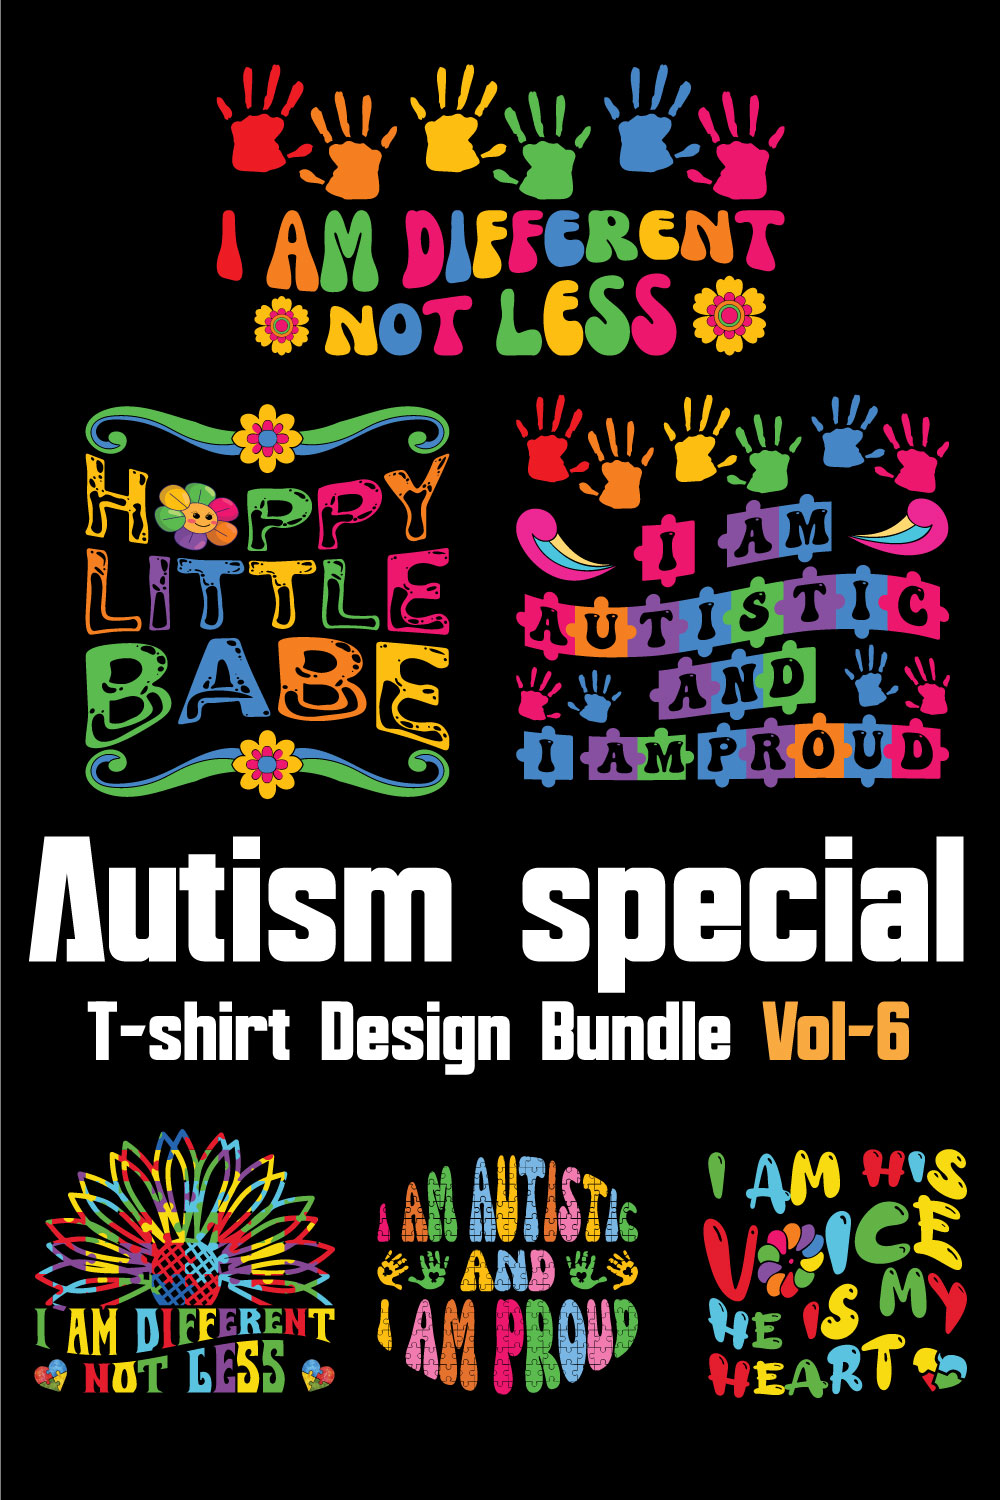 Autism Special T-shirt Design Bundle Vol-6 pinterest preview image.